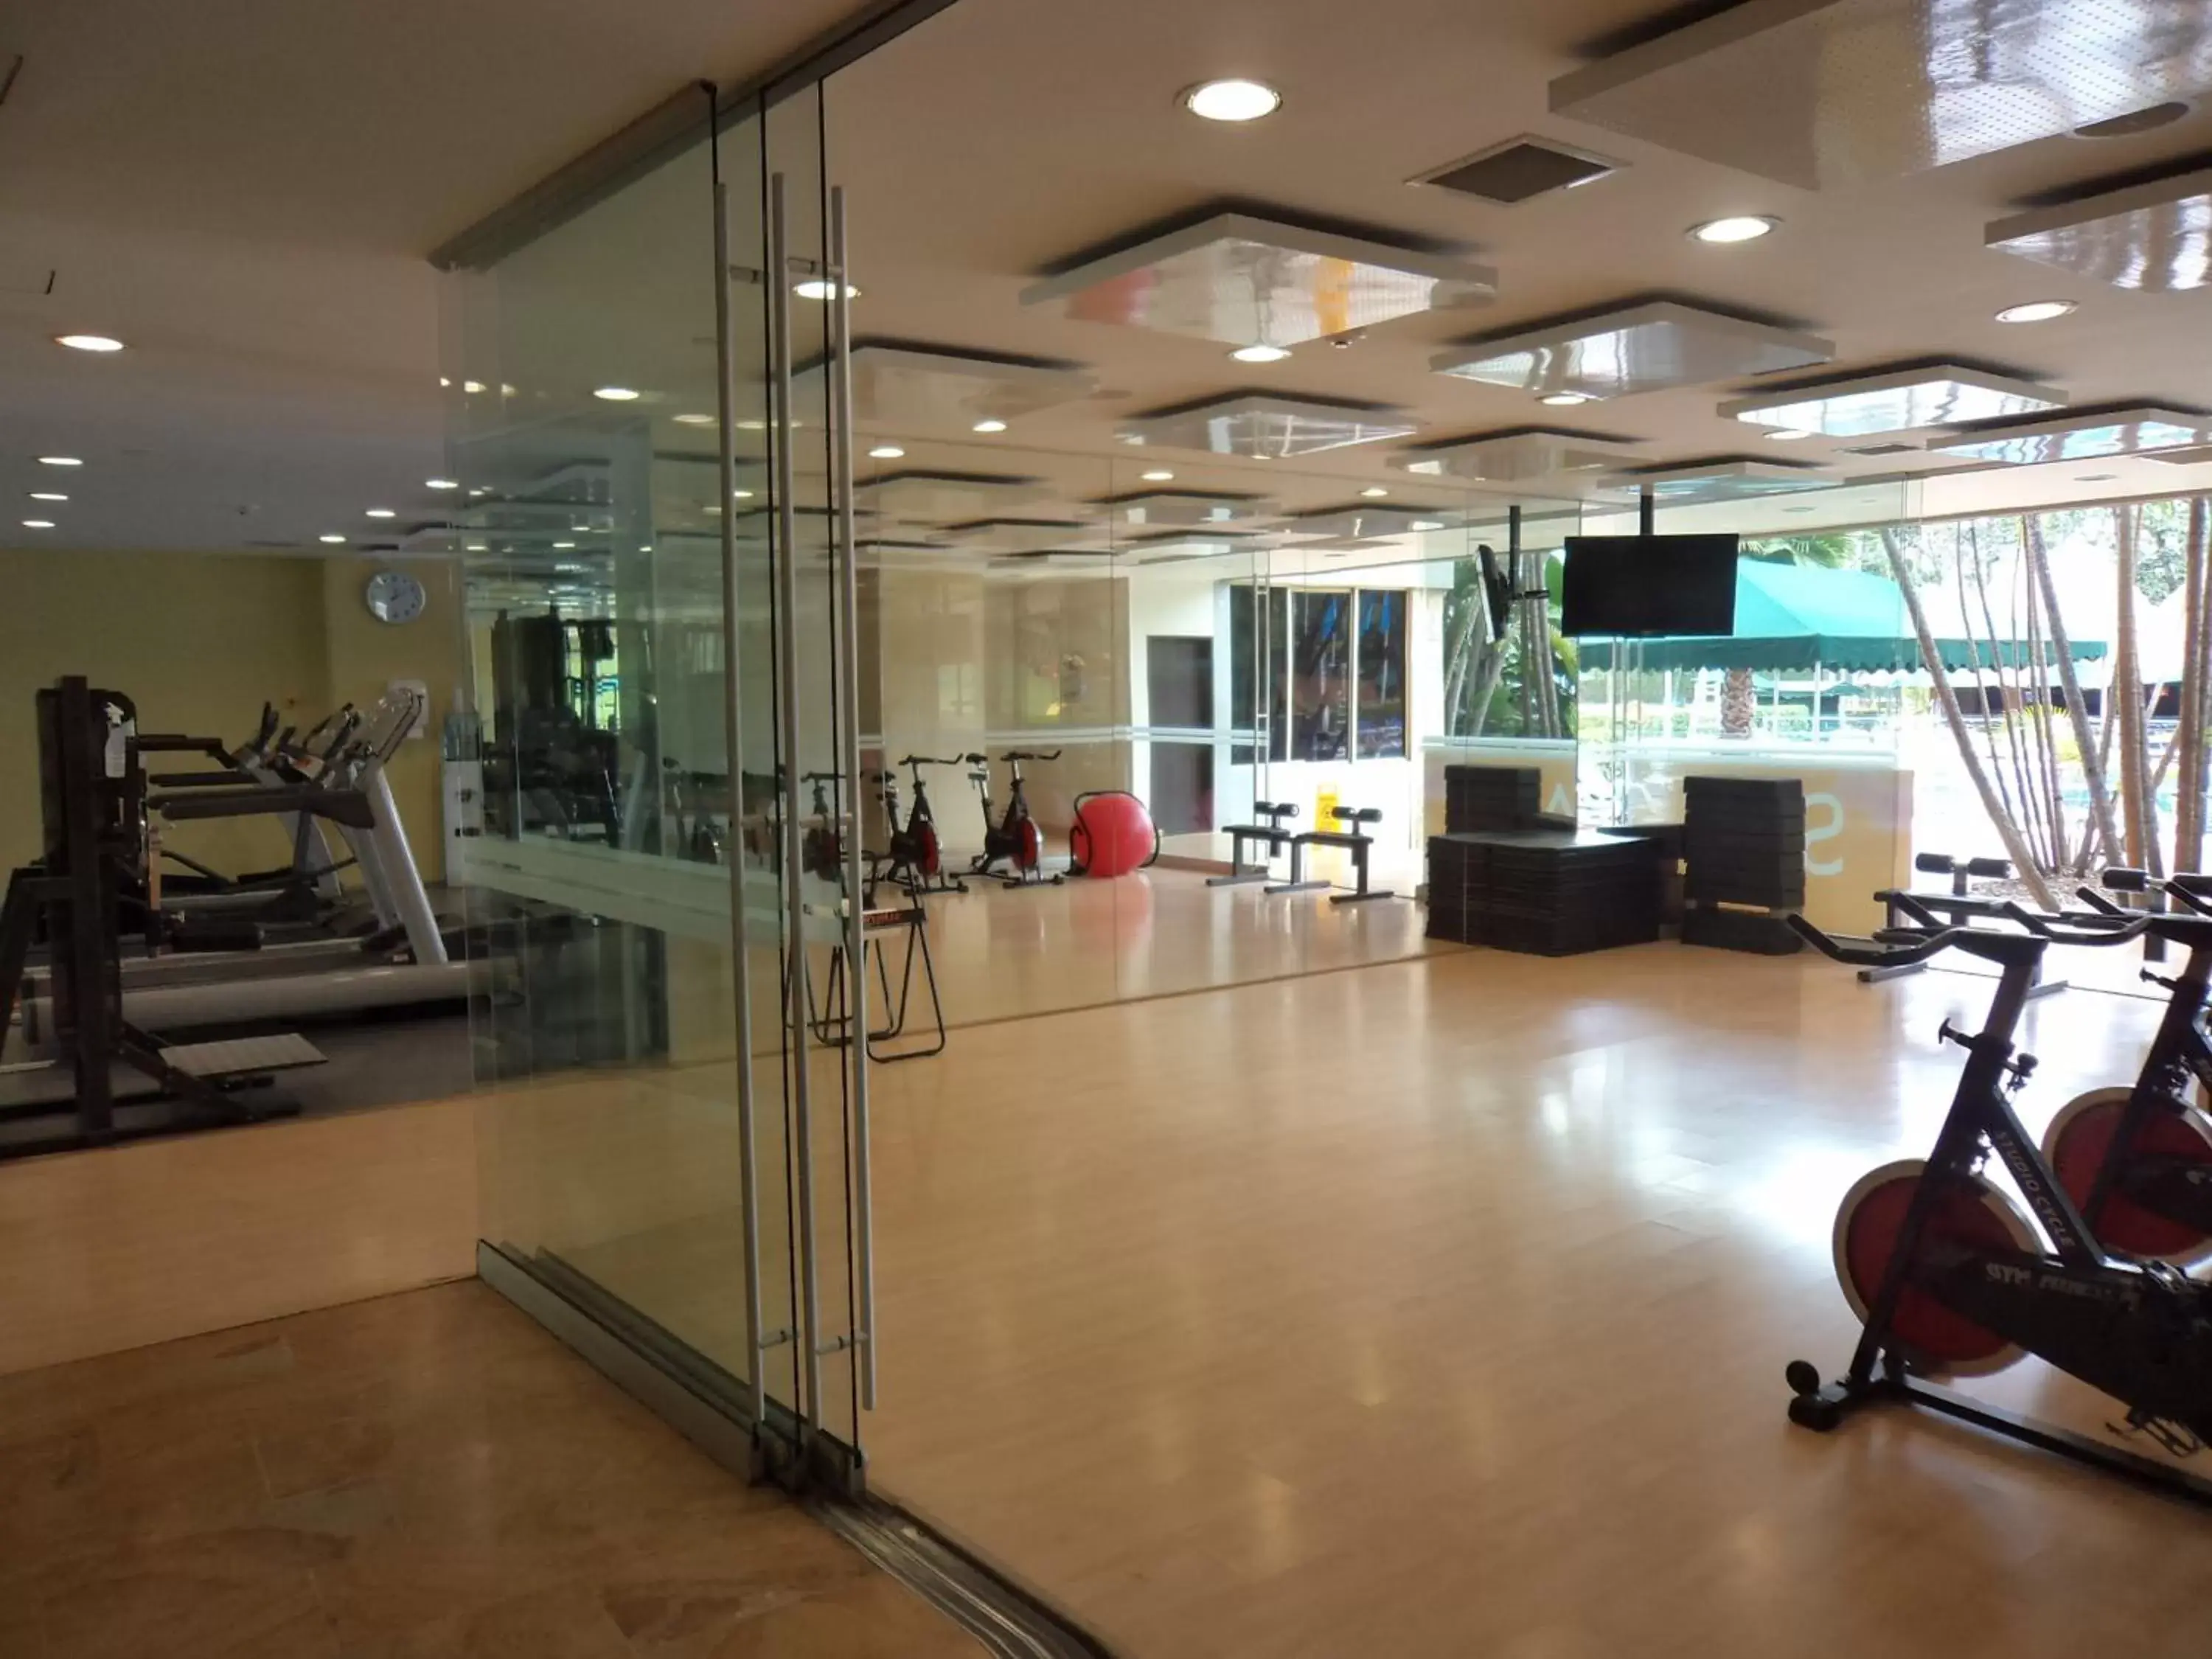 Fitness centre/facilities, Fitness Center/Facilities in Hotel Intercontinental Medellín, an IHG Hotel